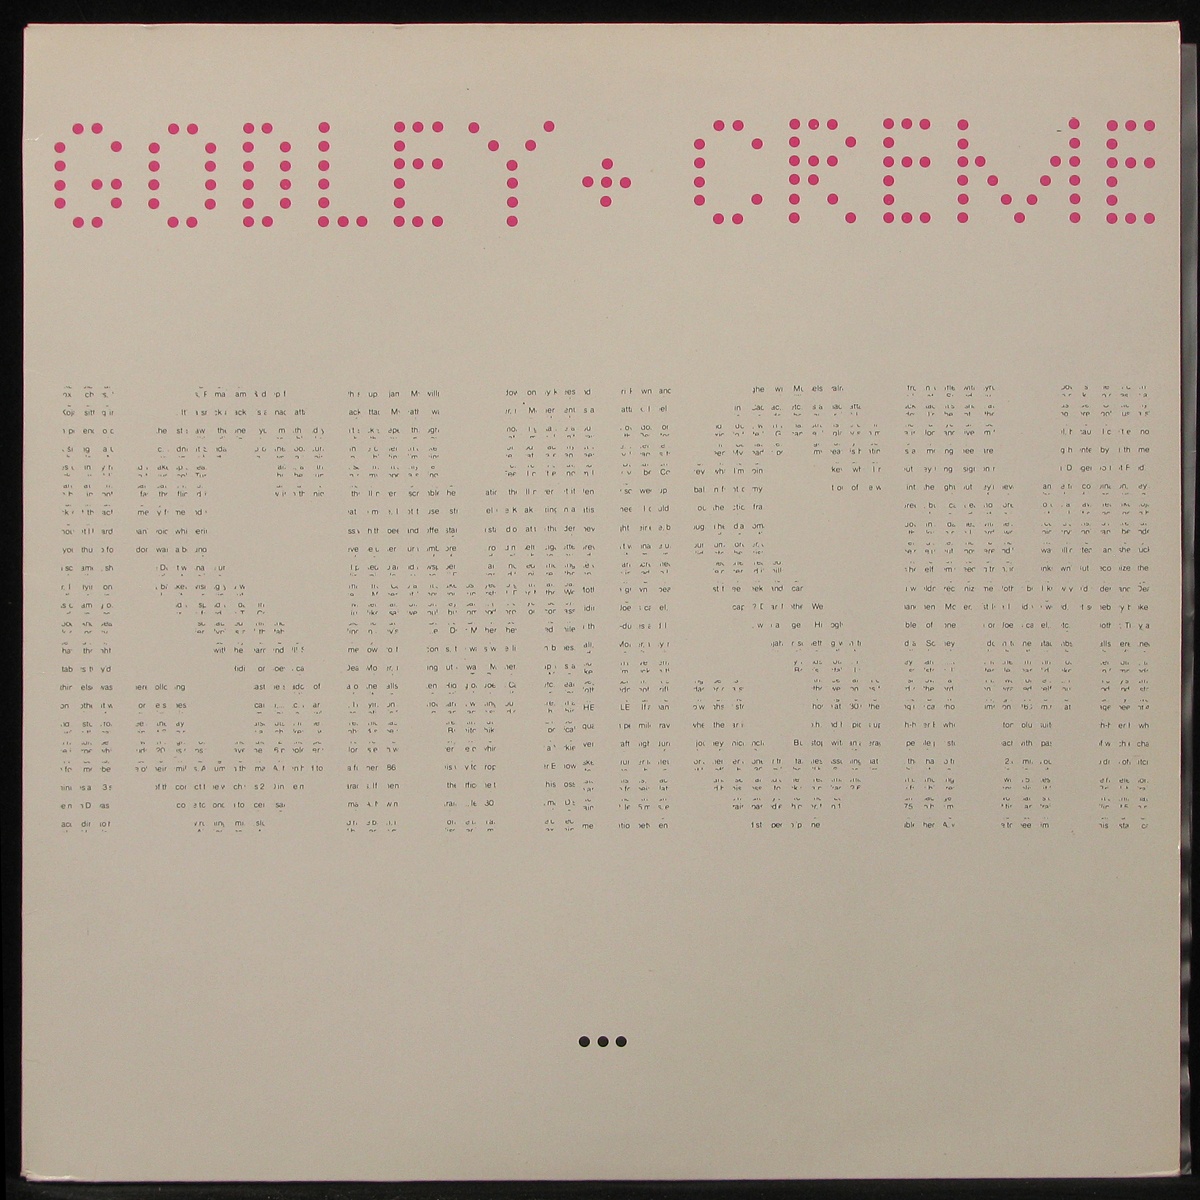 LP Godley & Creme — Ismism фото